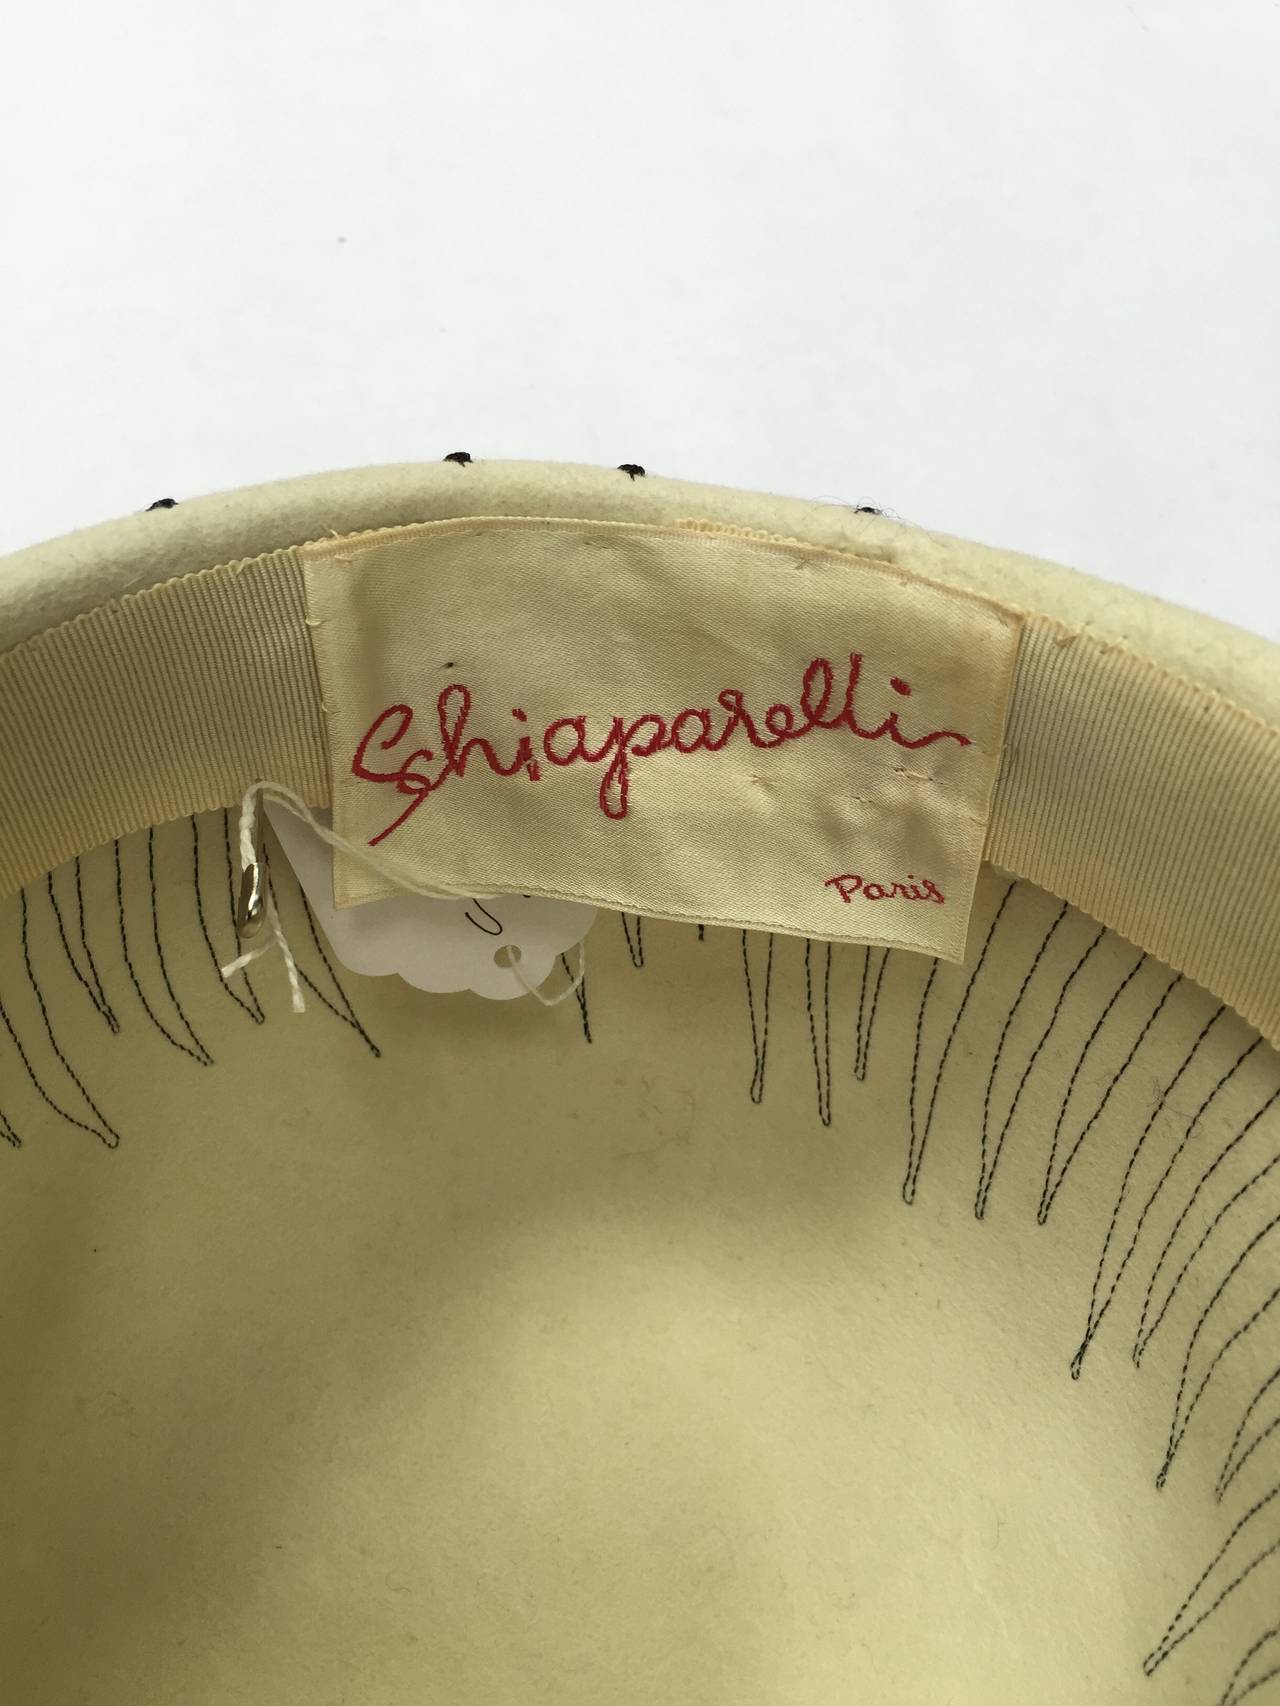 Elsa Schiaparelli Paris 1950s White Wool Felt Hat. For Sale 3